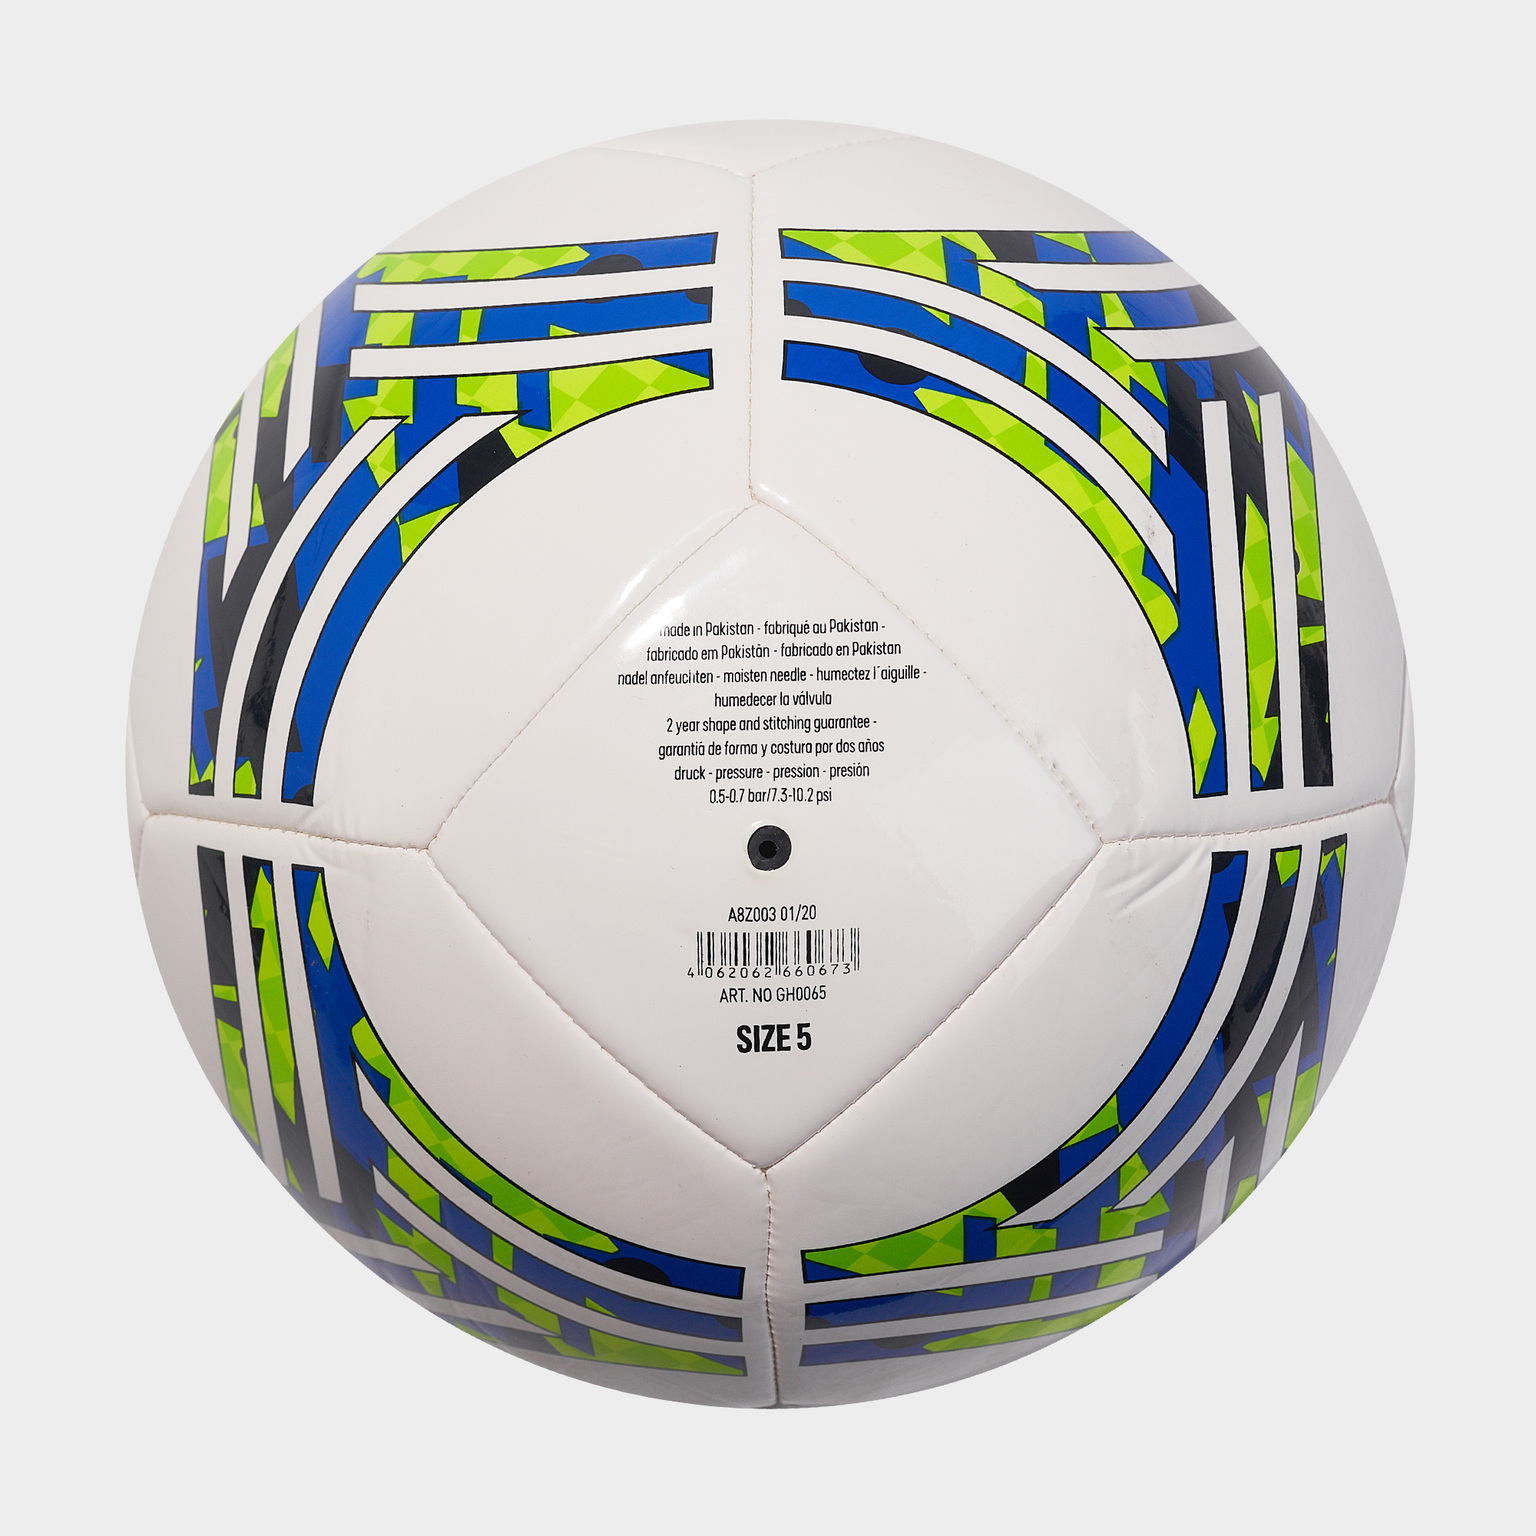 Футбольный мяч Adidas Tango Club GH0065